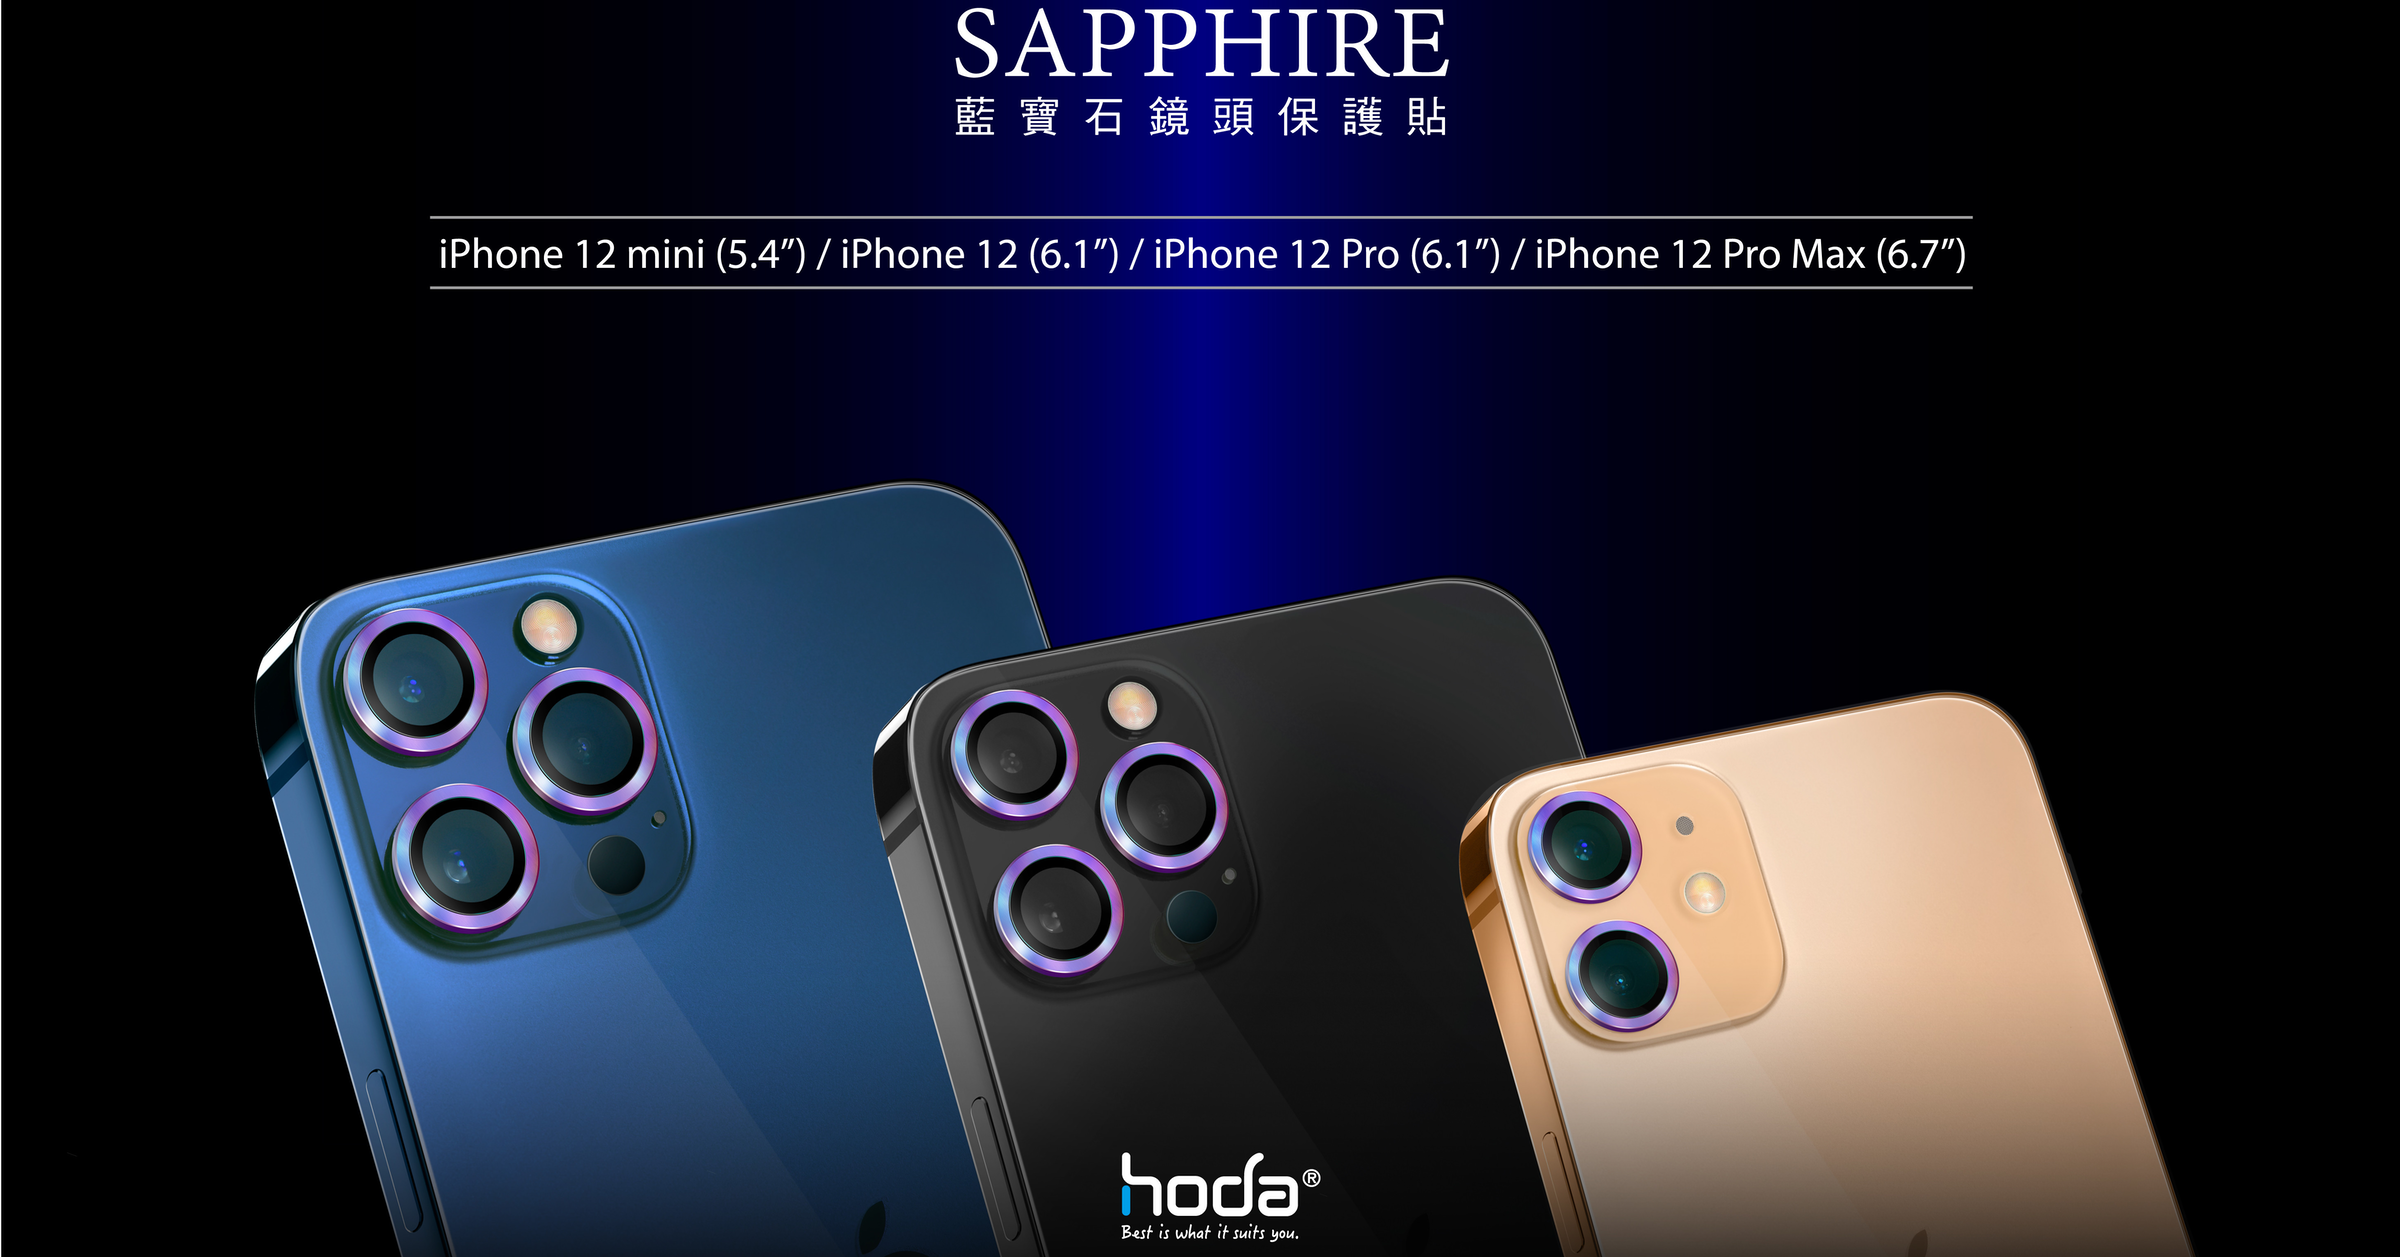 照片中提到了SAPPHIRE、藍寶石鏡頭保護貼、iPhone 12 mini (5.4") / iPhone 12 (6.1") / iPhone 12 Pro (6.1") / iPhone 12 Pro Max (6.7")，包含了電腦牆紙、產品設計、牌、產品、小工具